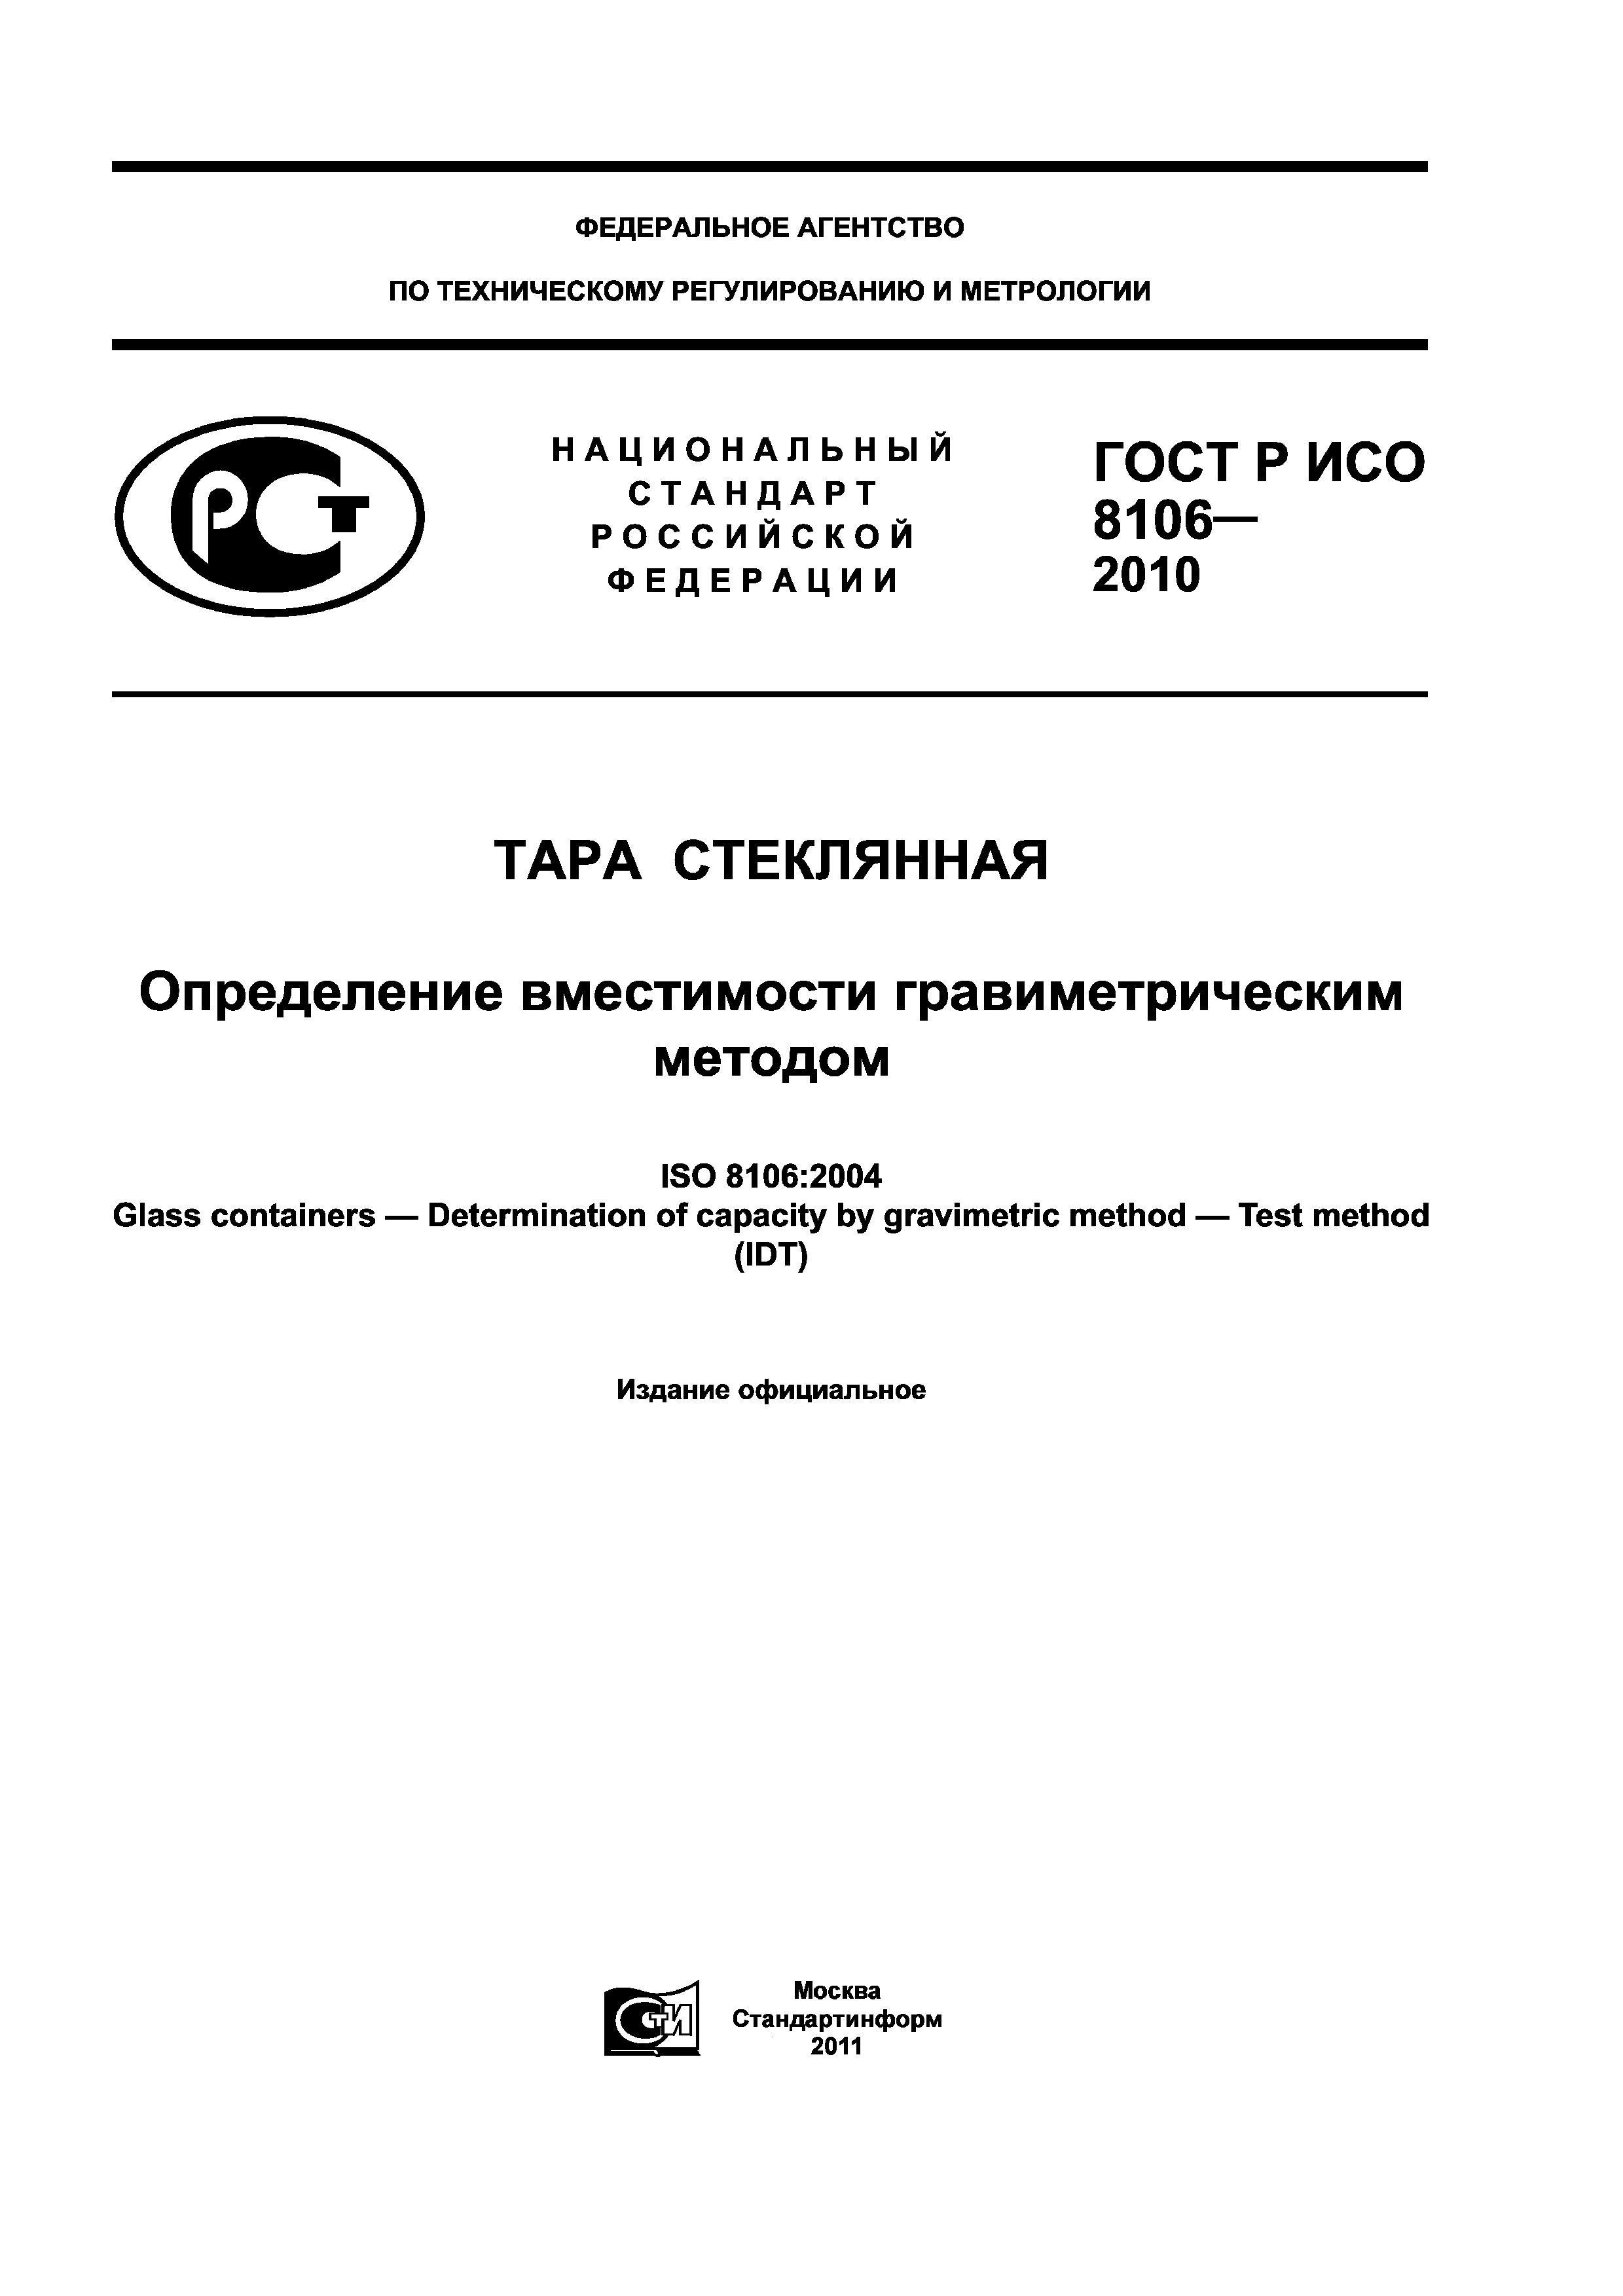 ГОСТ Р ИСО 8106-2010